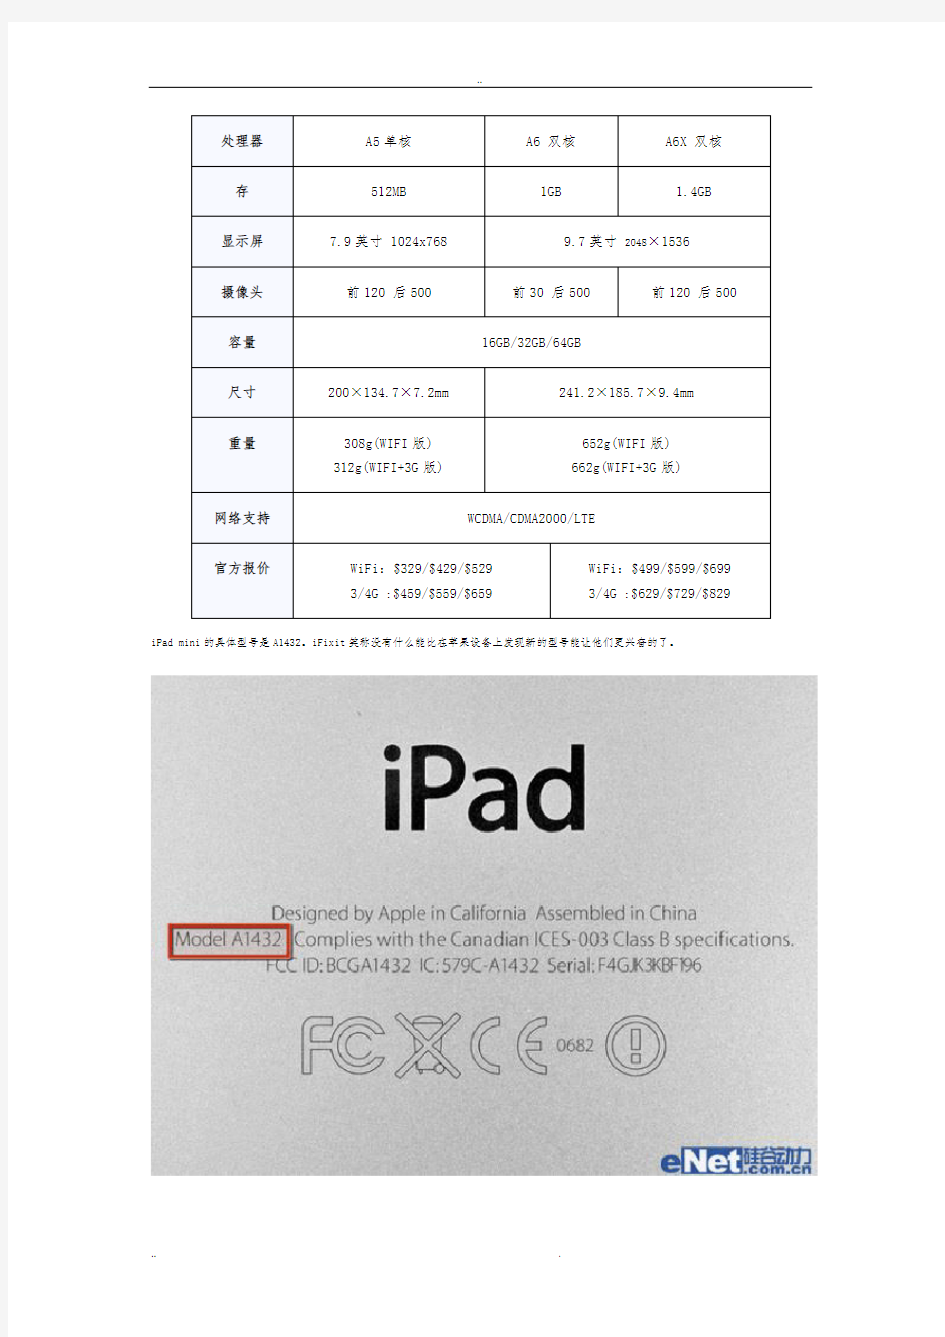 一步一步来看iPadmini平板电脑拆解